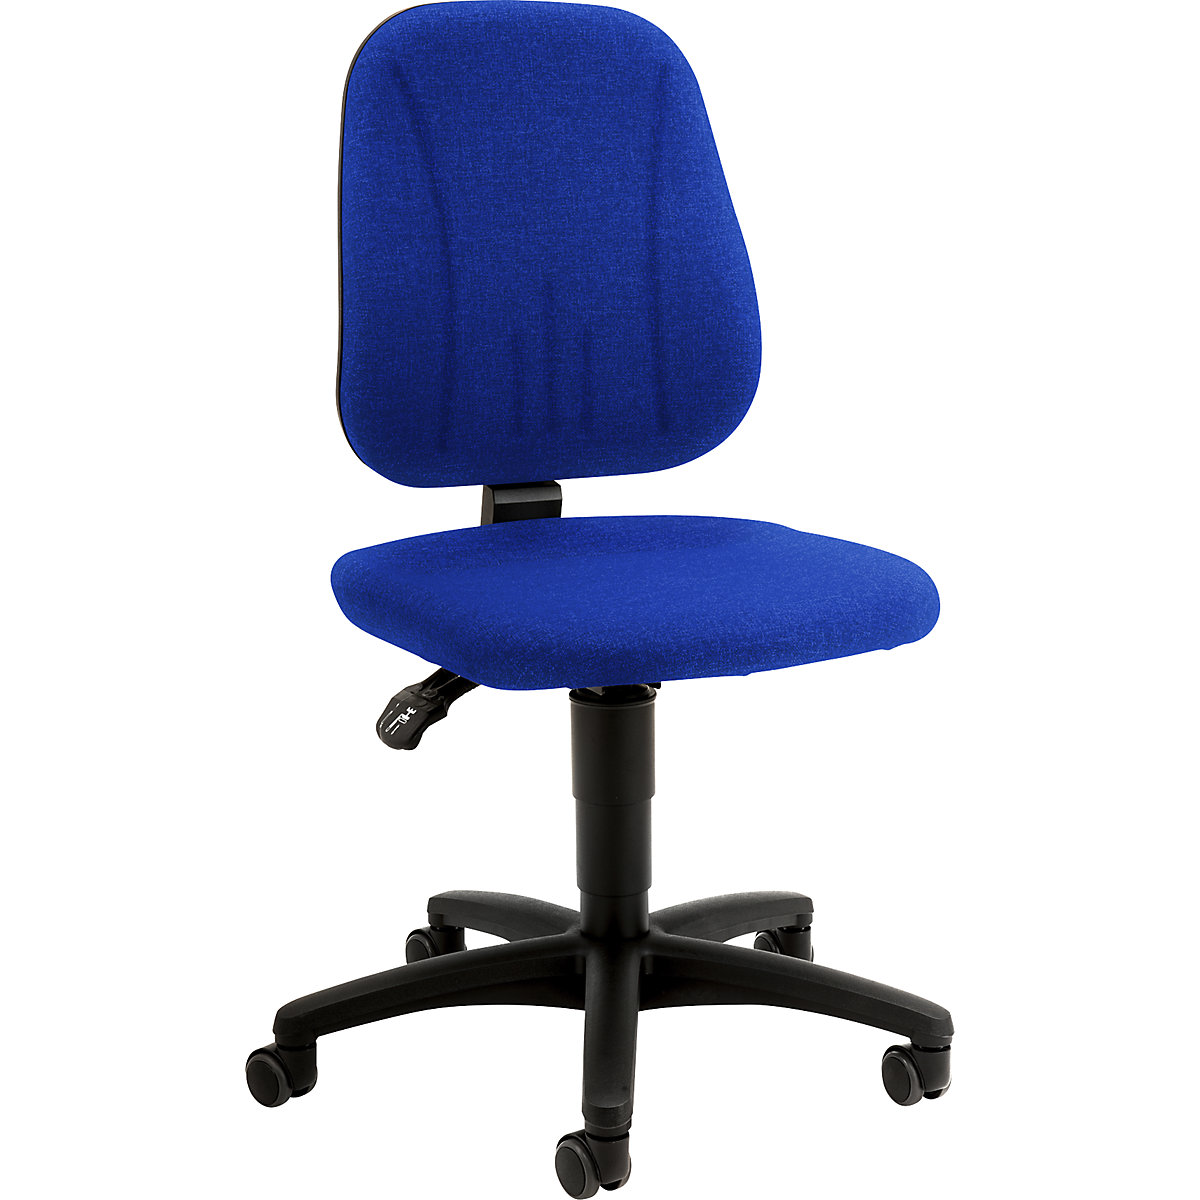 Pracovní otočná židle – bimos, s přestavováním výšky plynovým pístem, látkový potah, modrá, s kolečky-15